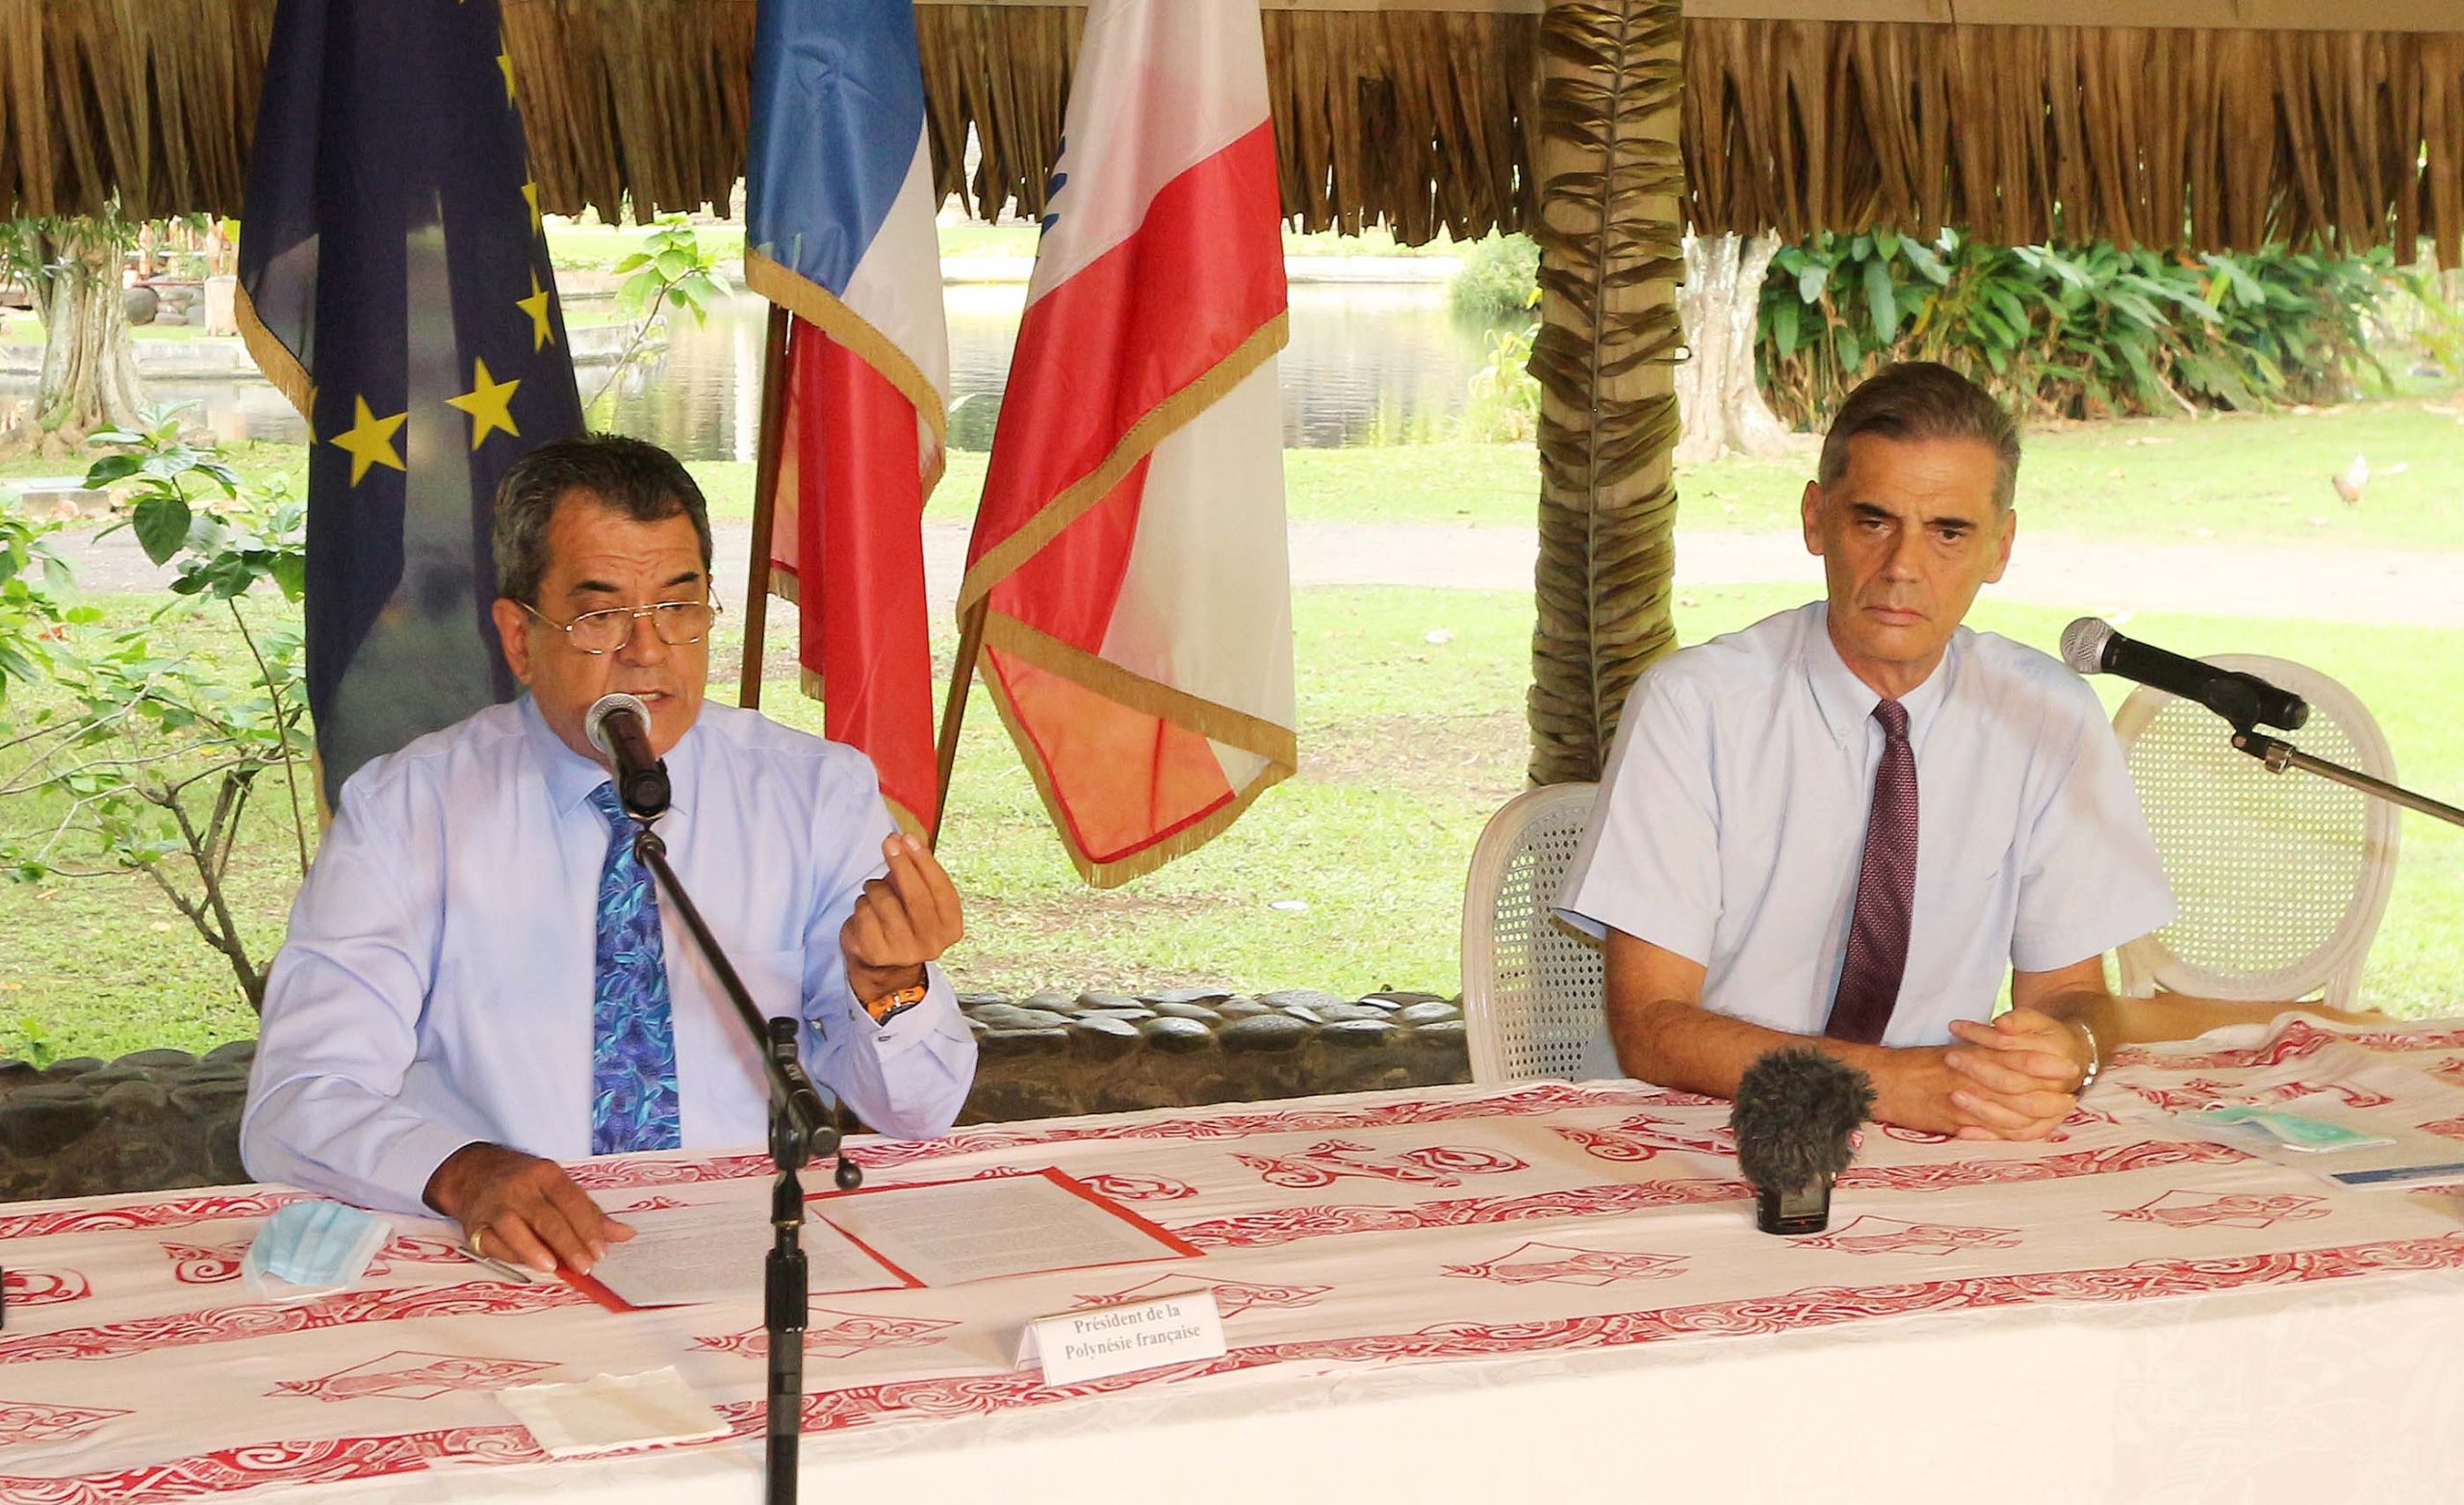 Photo allocution du président sur l'absence de cas COVID sur le Paul Gauguin